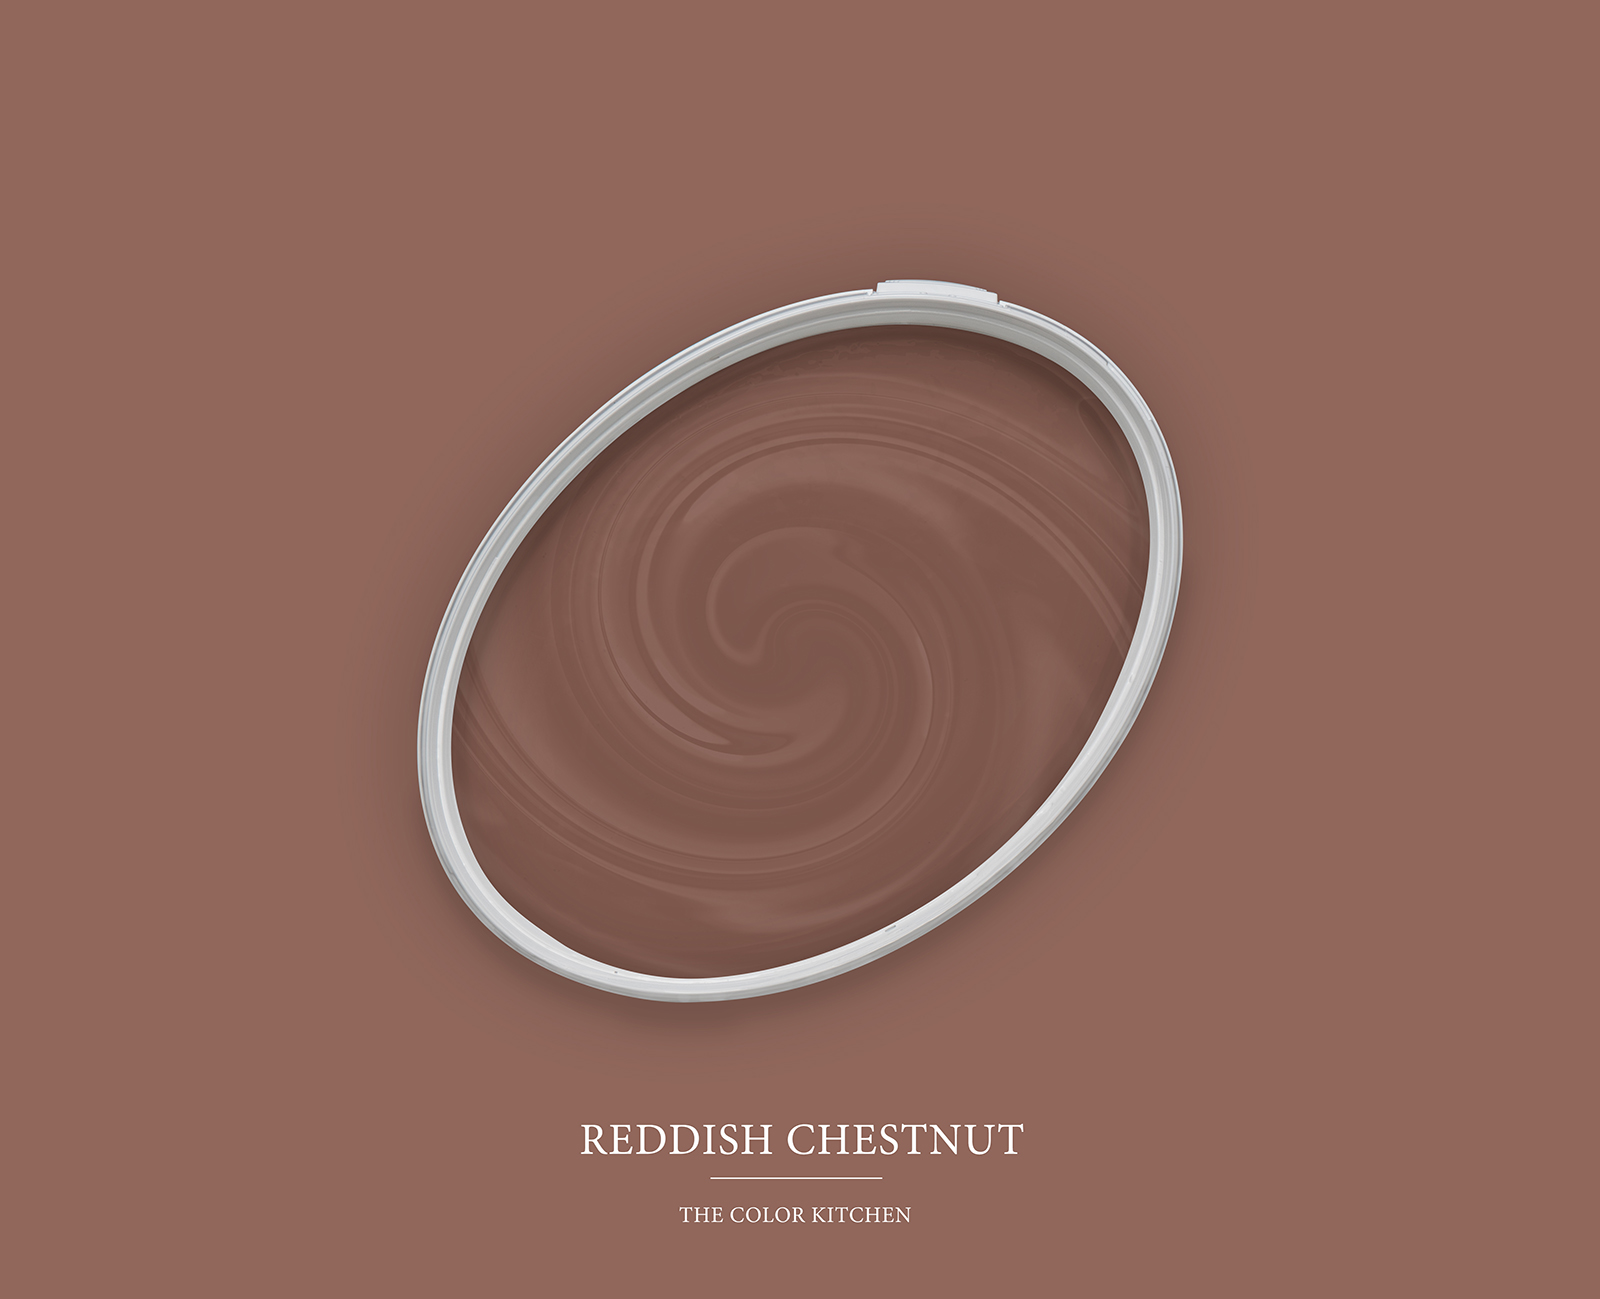 Muurverf TCK5014 »Reddish Chestnut« in prachtig roodbruin – 5,0 liter
